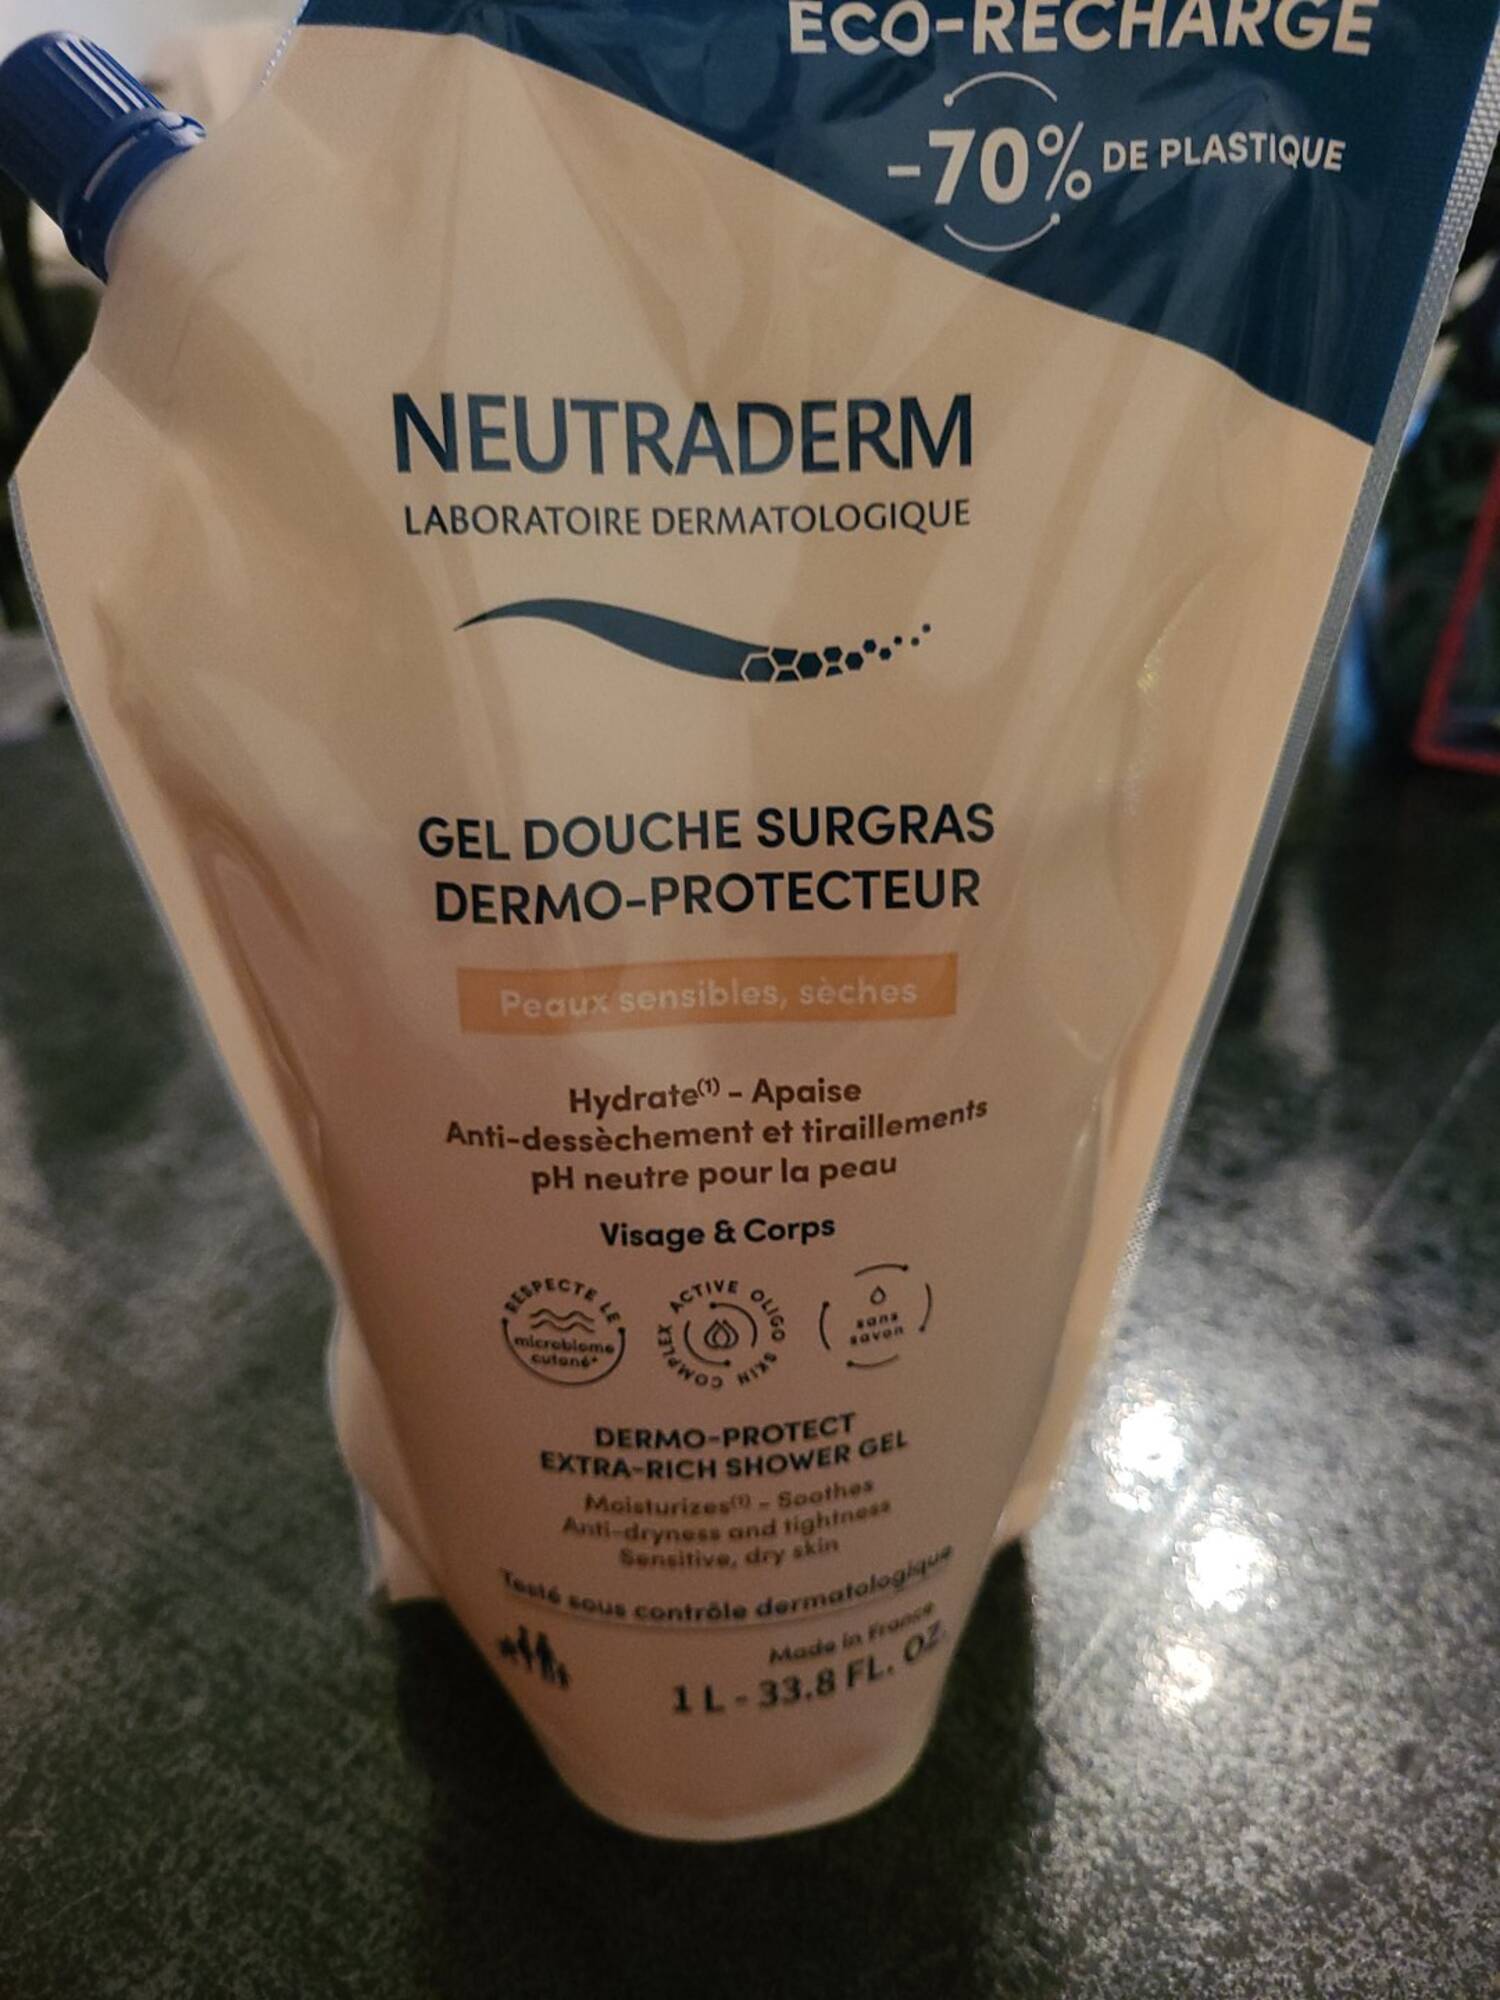 NEUTRADERM - Gel douche surgras dermo-protecteur visage & corps